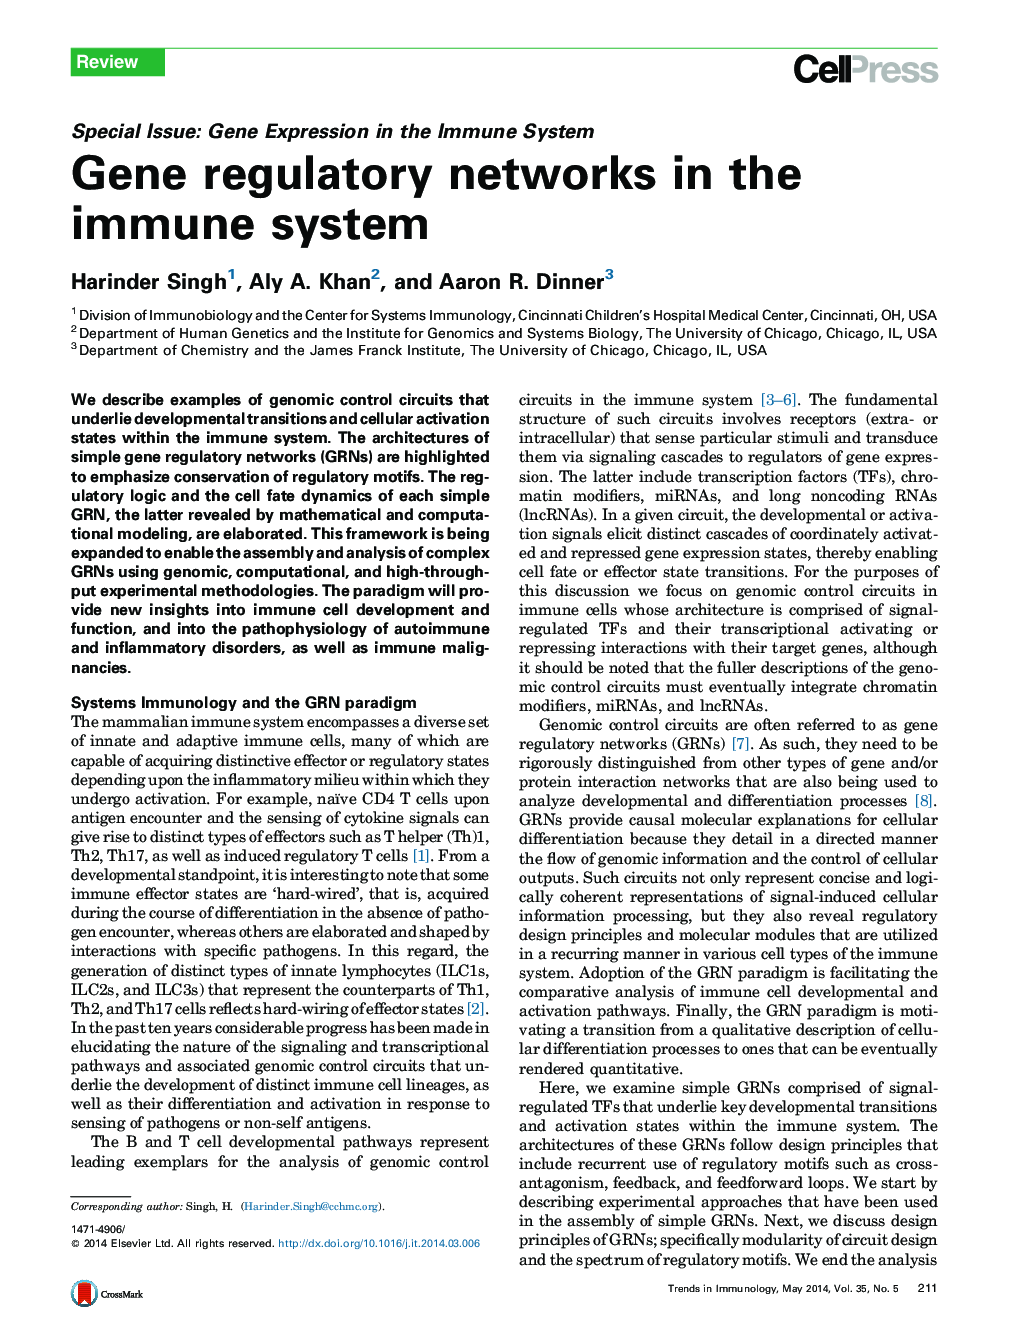 شبکه های تنظیم ژن در سیستم ایمنی بدن 